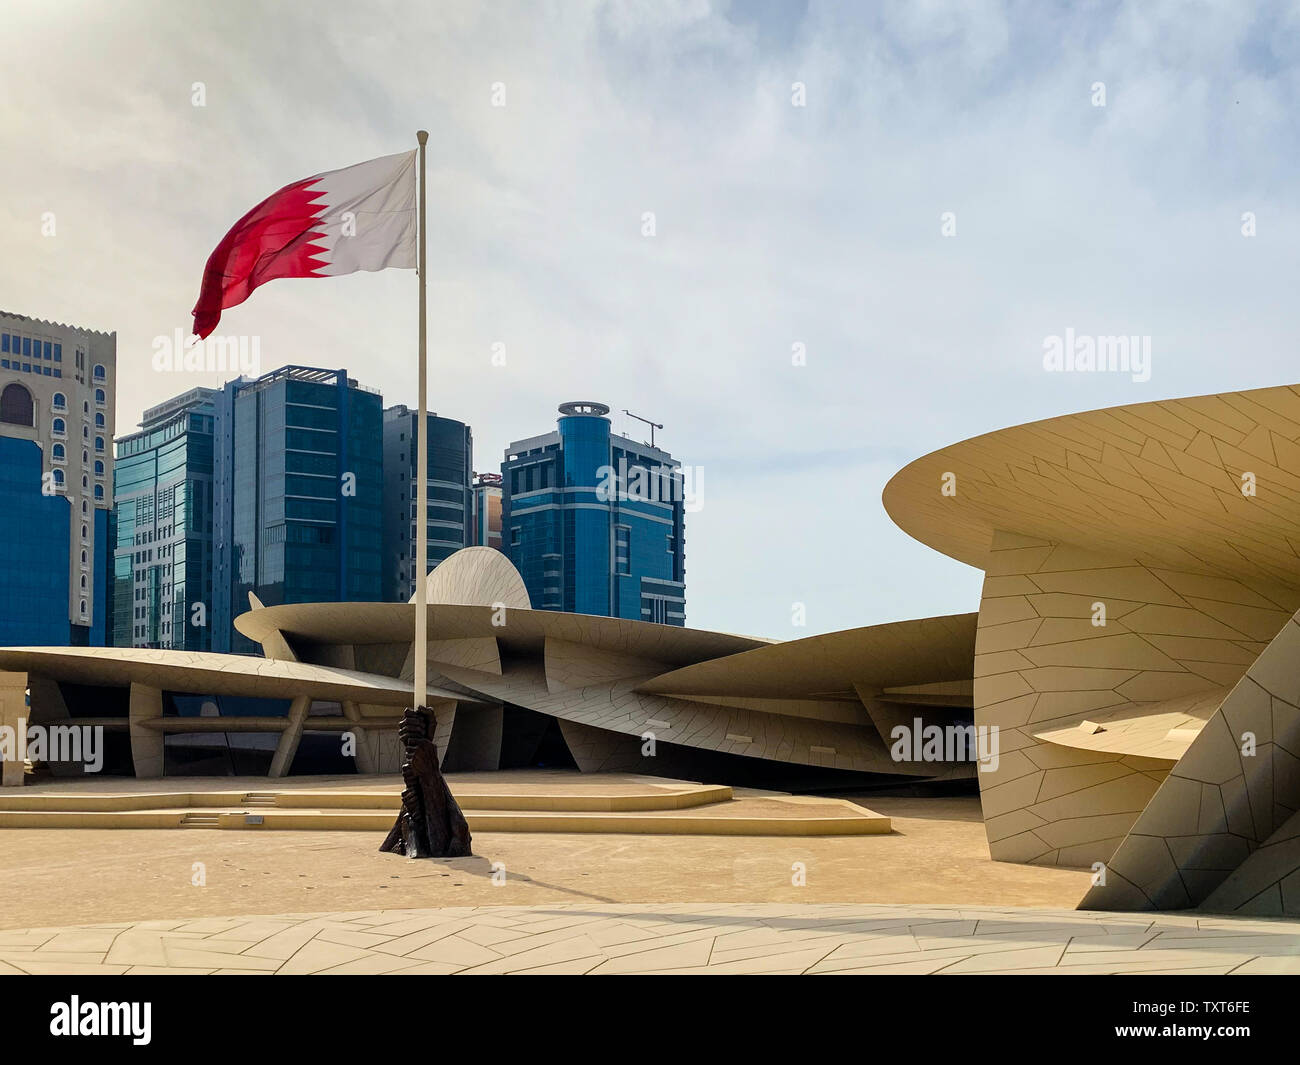 Musée national du Qatar, Doha. Le musée est en forme d'une rose du désert et est nouvellement construit. Skyline avec agitant le drapeau du Qatar. Banque D'Images